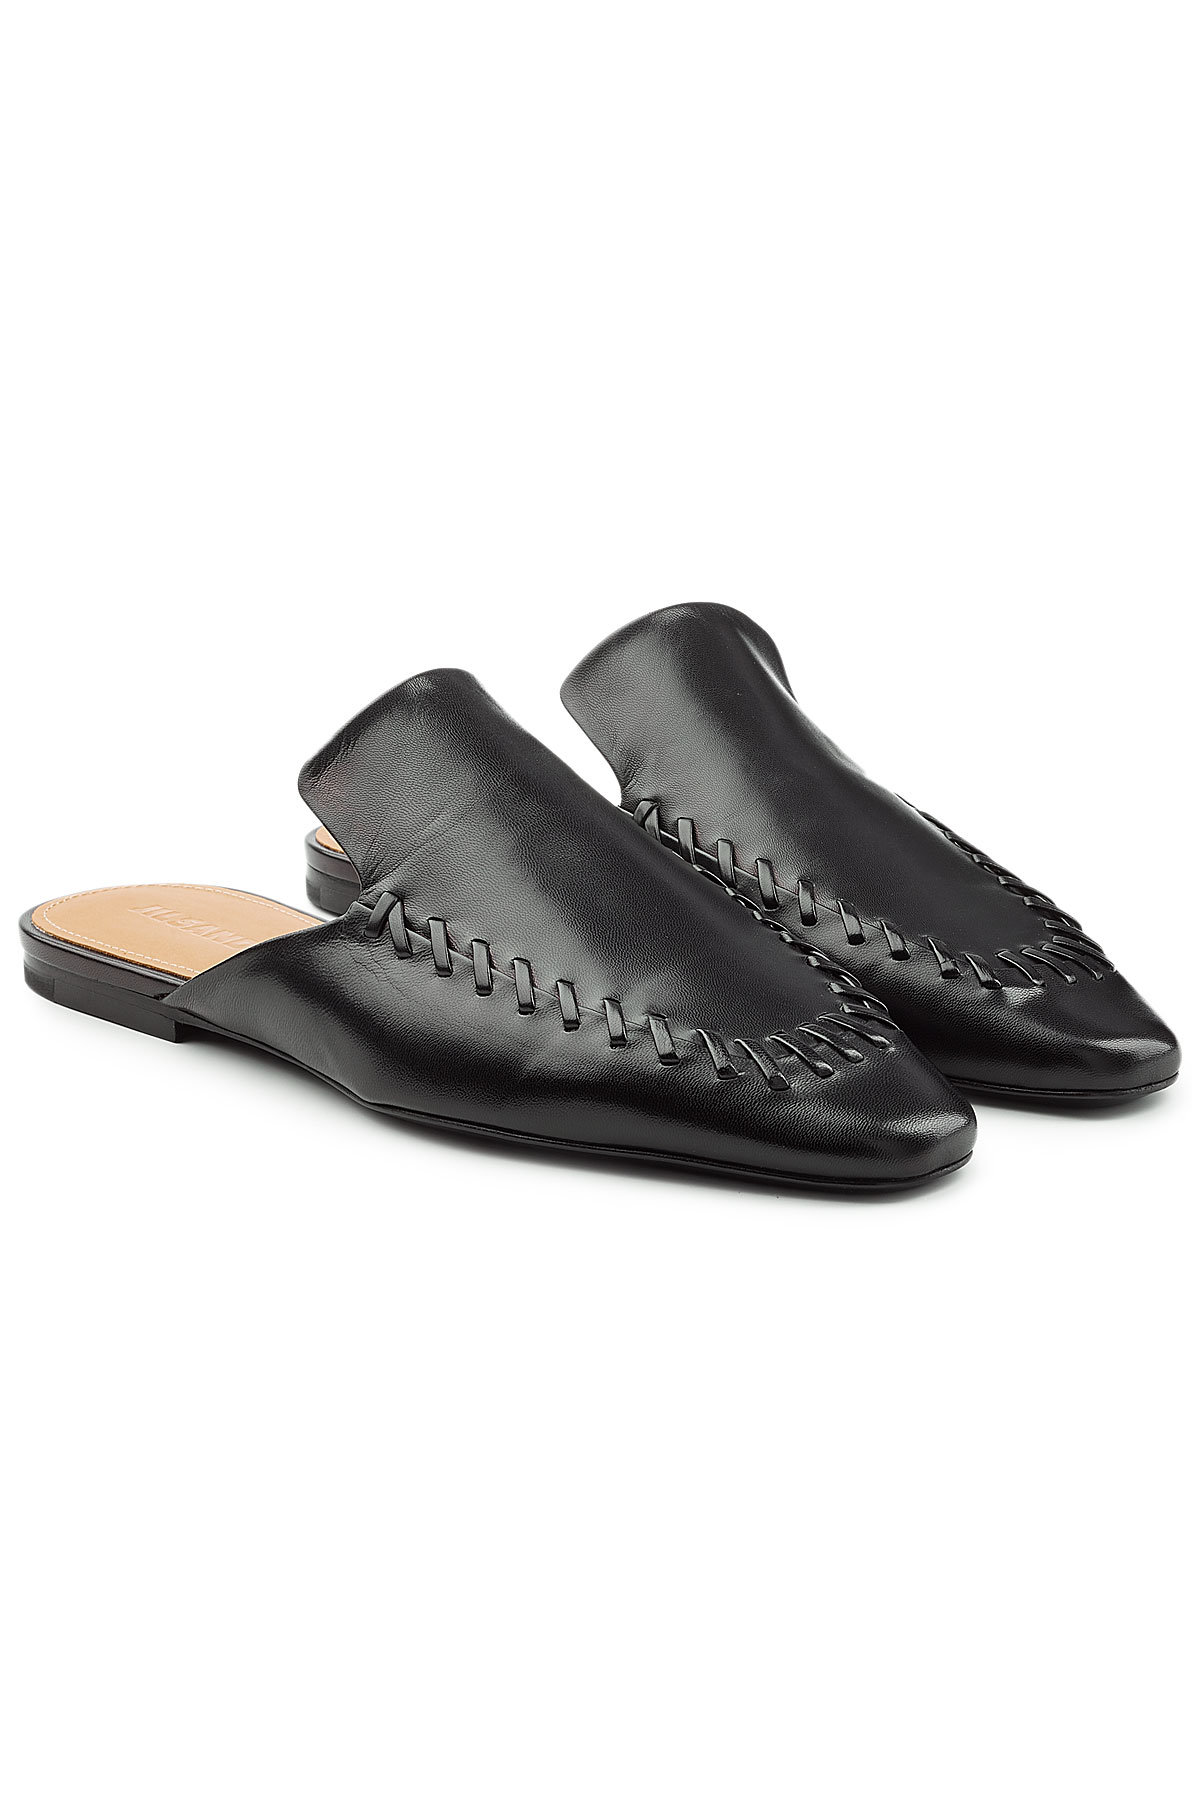 Jil Sander - Tripon Slip-On Leather Loafers